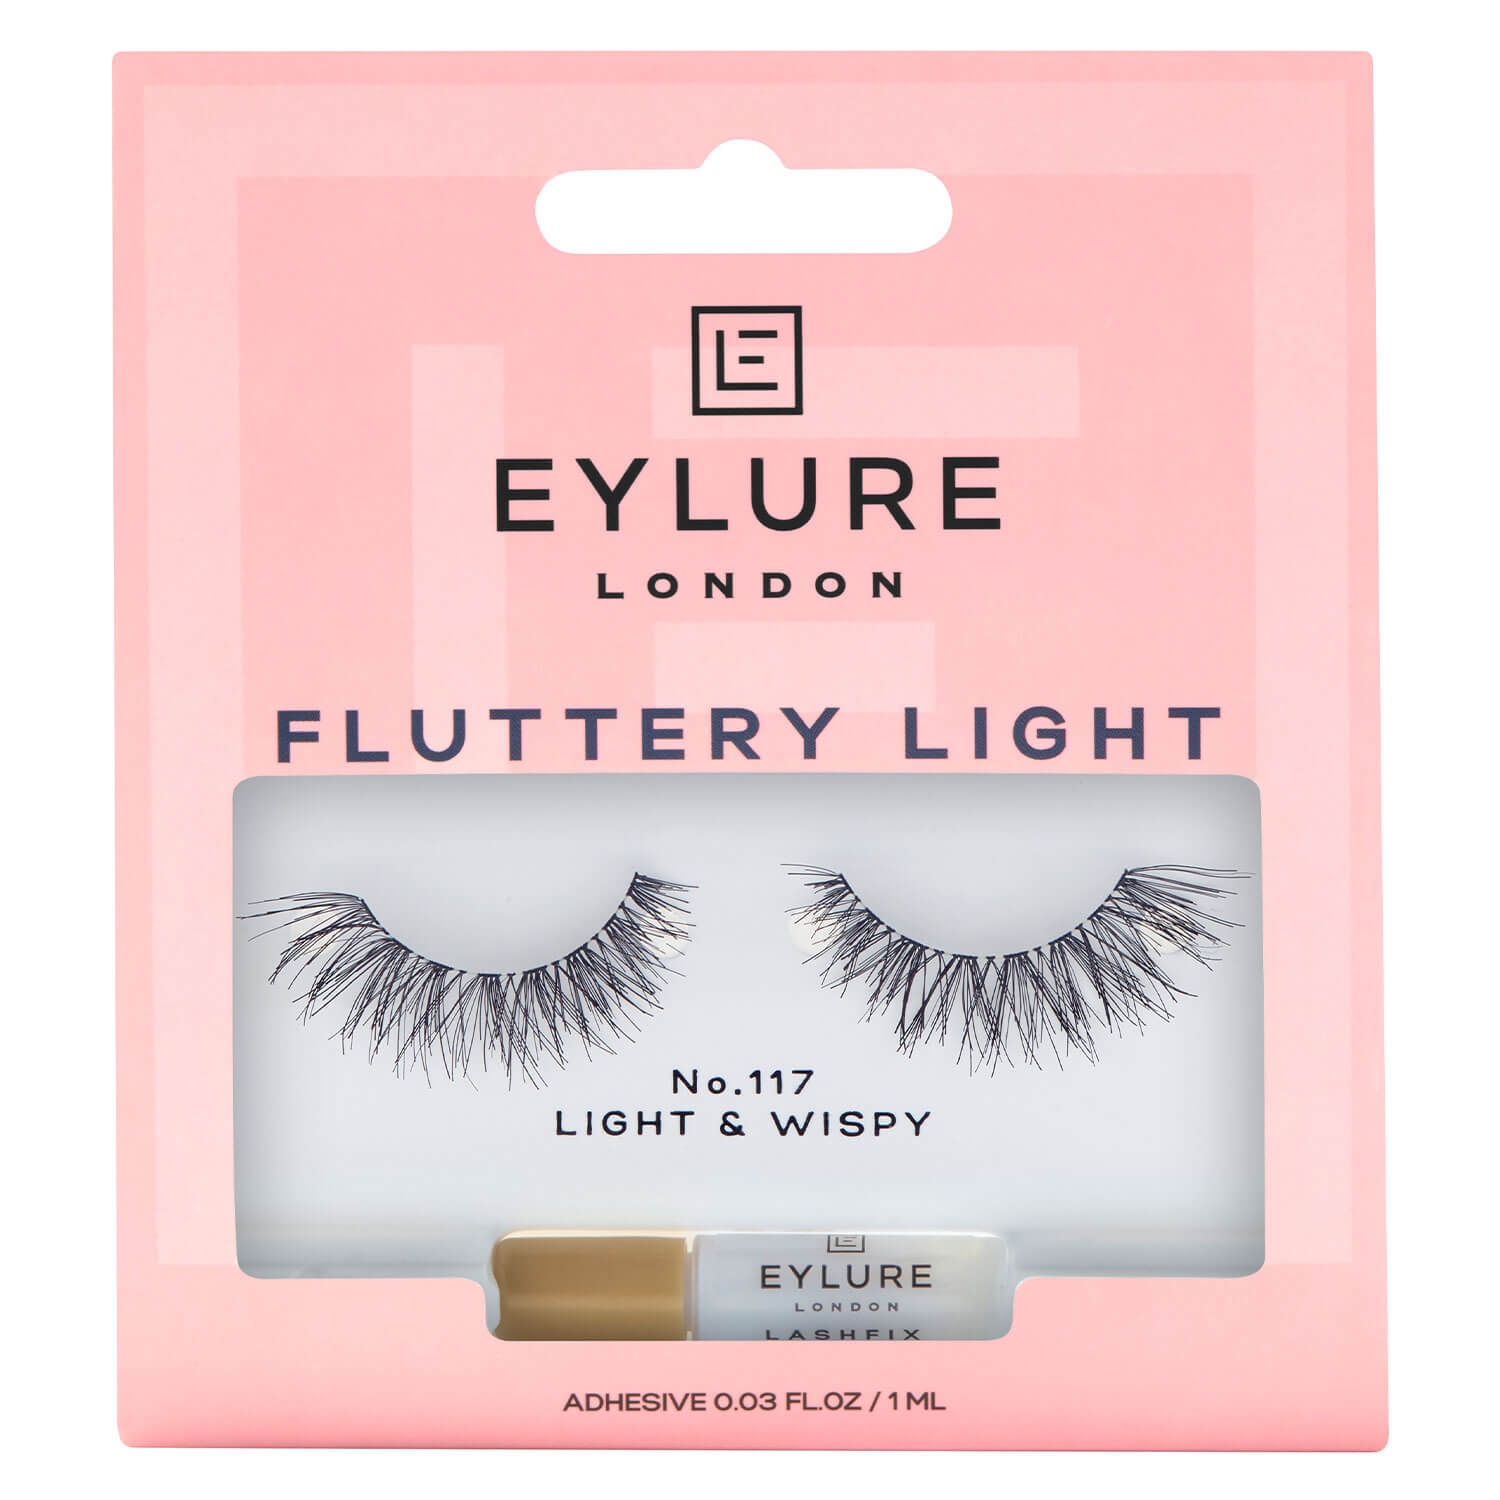 Produktbild von EYLURE - Wimpern Fluttery Light 117